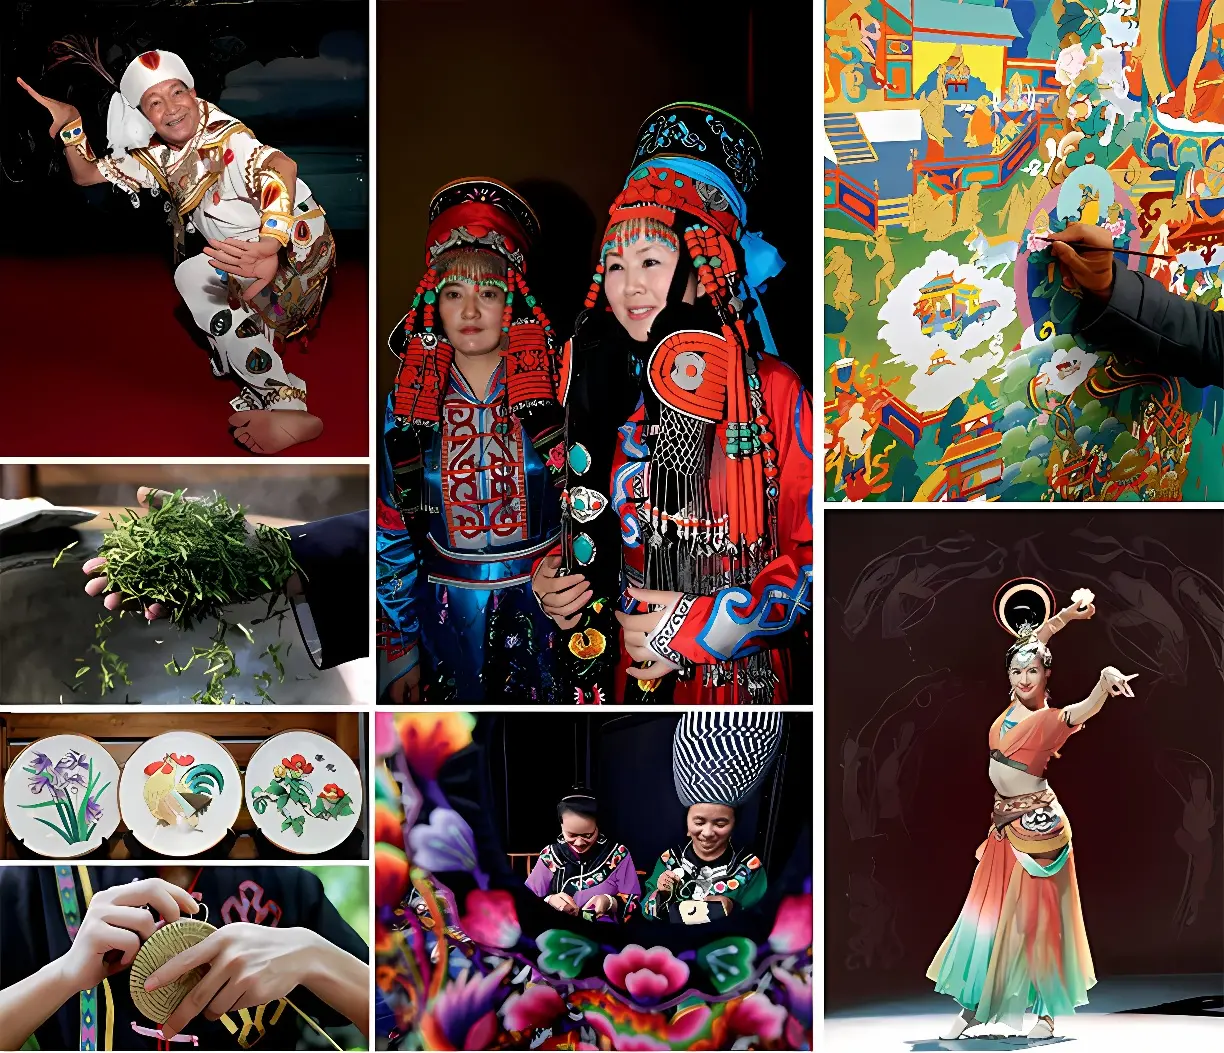 图片展示多样文化场景：传统服饰人物、绘画创作、厨艺烹饪、舞蹈表演，体现了丰富的艺术形式和民族特色。